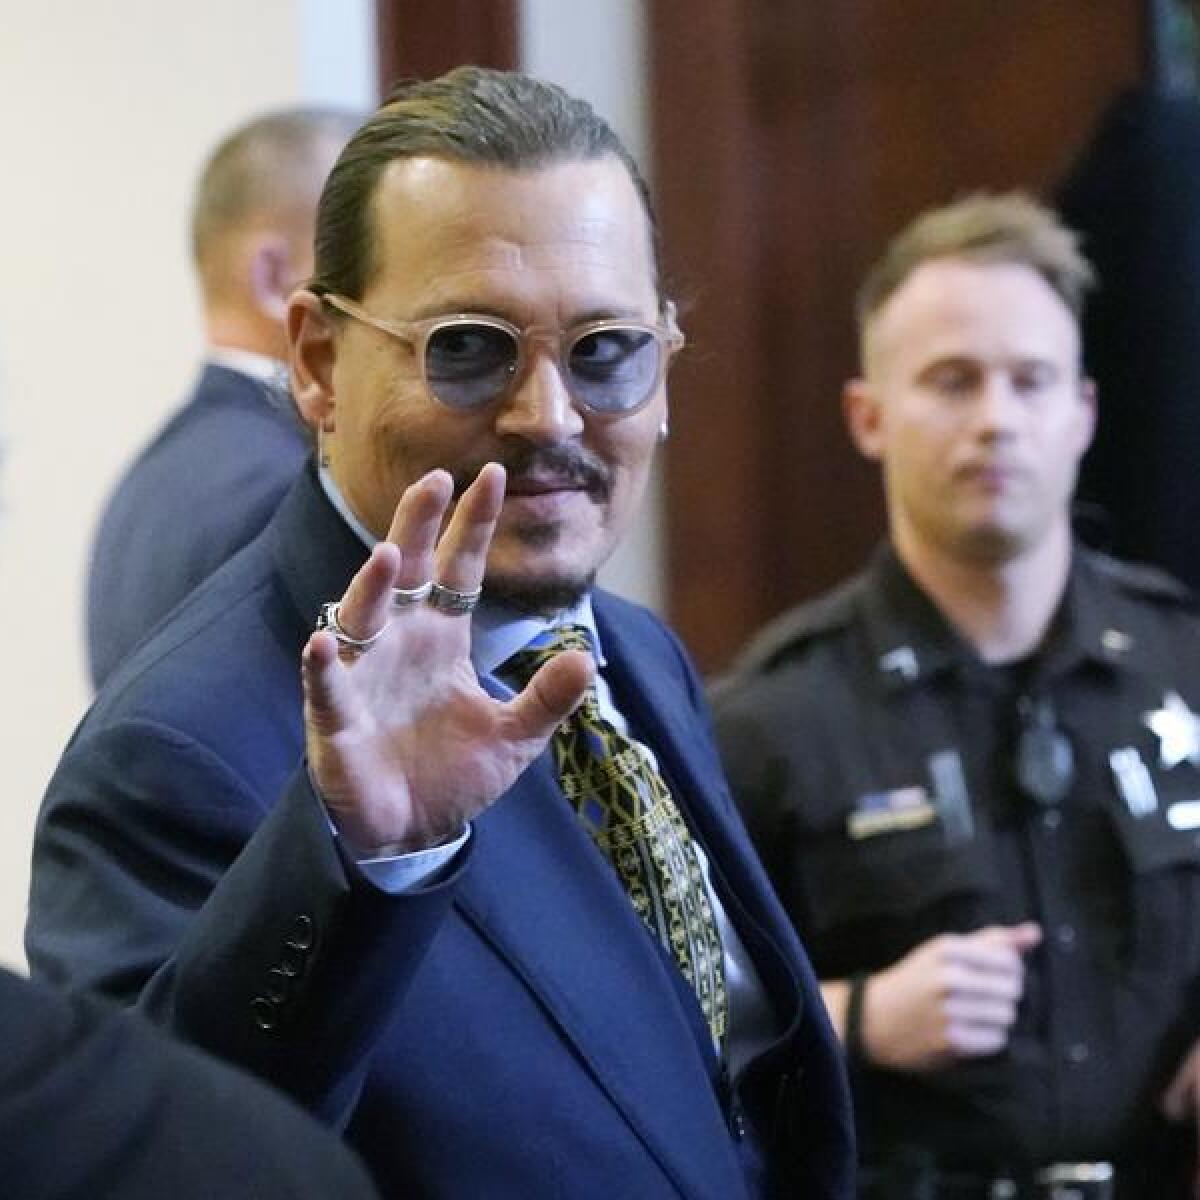 Actor Johnny Depp in court in Fairfax, Virginia.